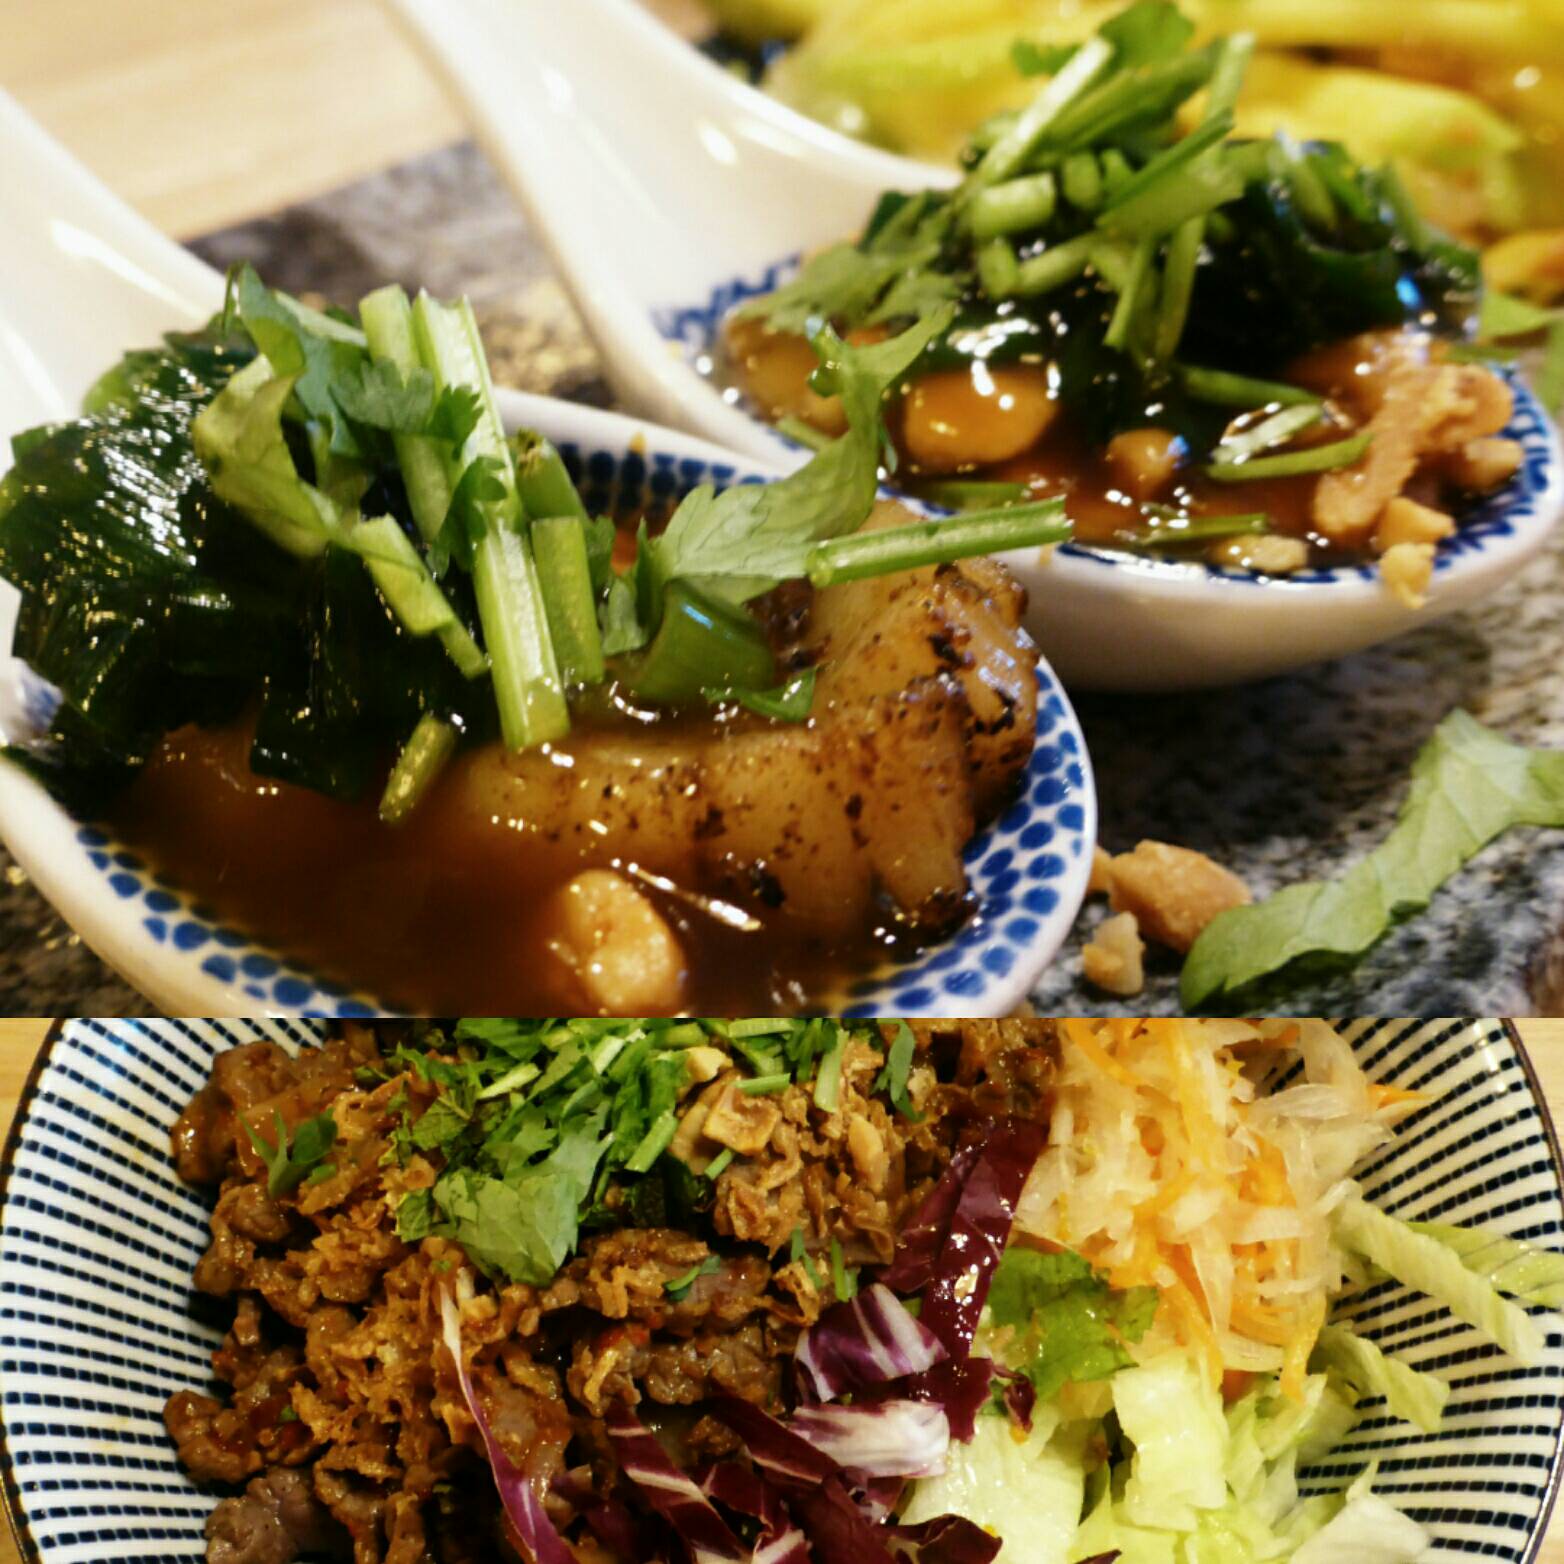 Sò  ip (drei gegrillte Jakobsmuscheln in Wasabi-Teriyaki-Sauce) und Bún bò trn (Reisnudeln mit gebratenem Zitronengras-Rindfleisch).